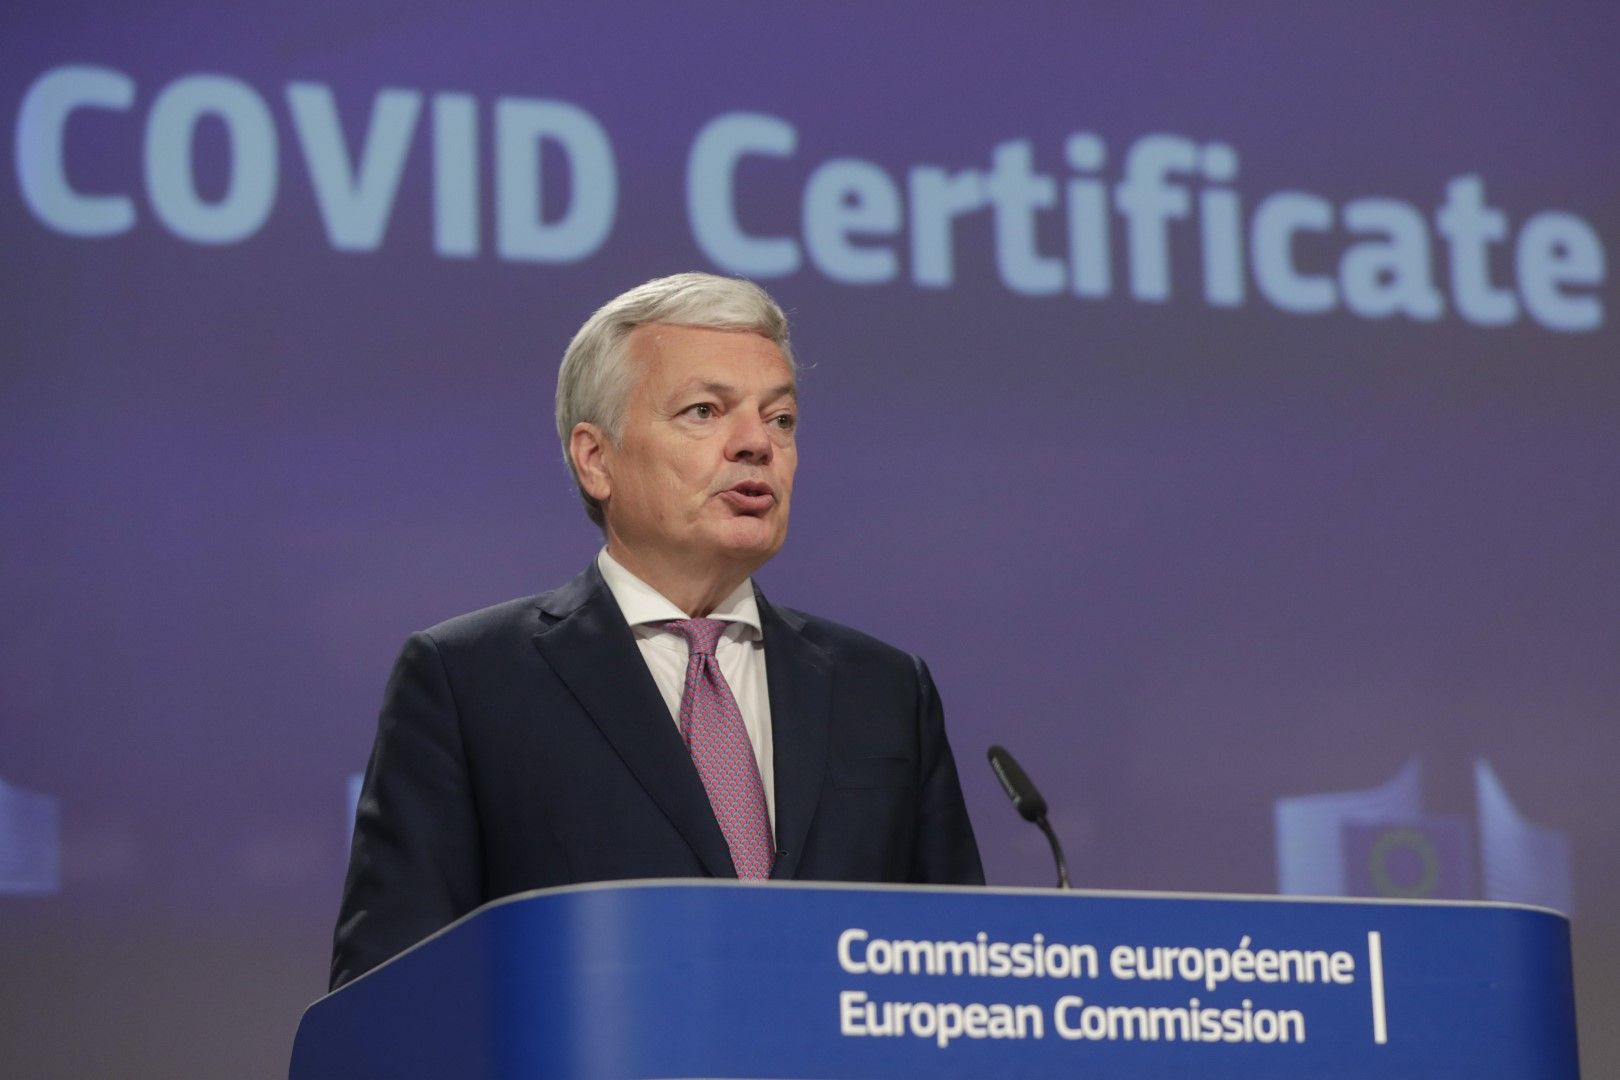 ЕС осигурява 100 млн. евро за покупката на 20 милиона бързи теста, каза Дидие Рейндерс